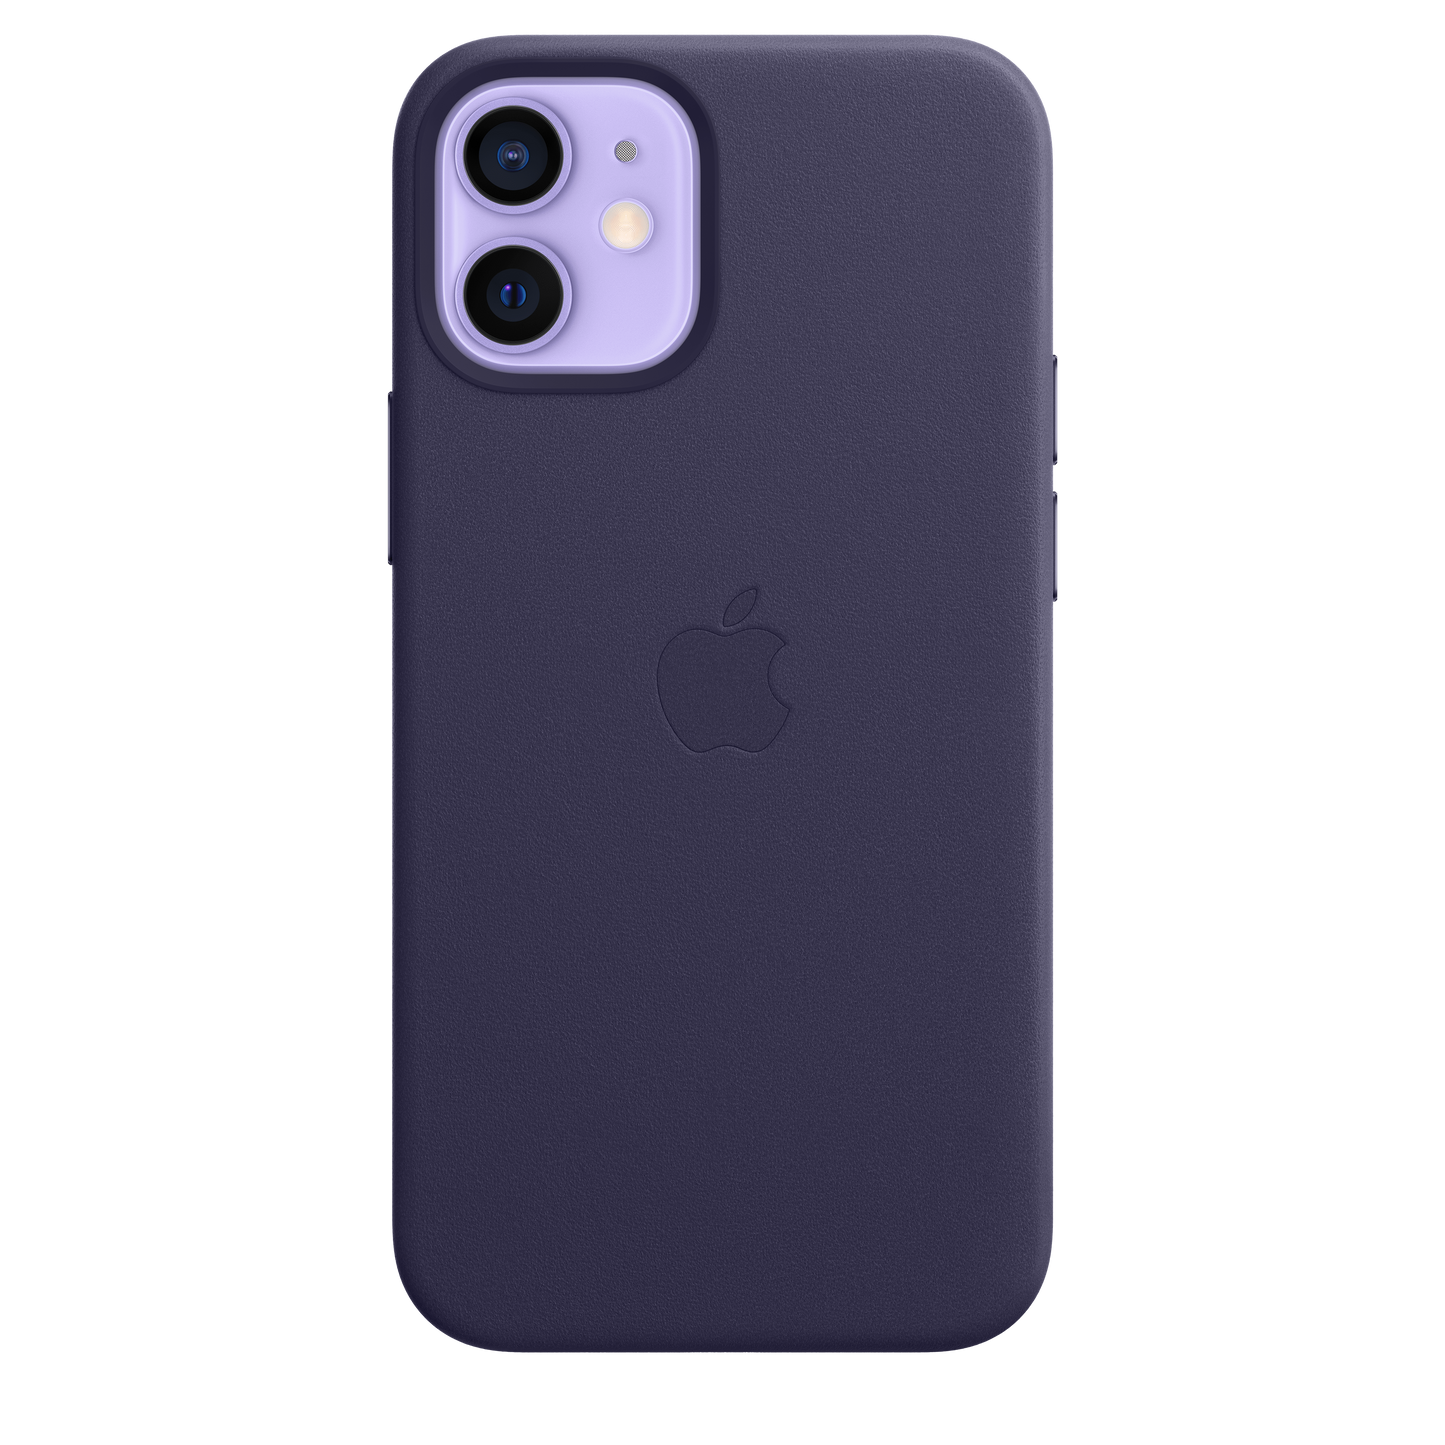 Funda de piel con MagSafe para el iPhone12 mini, Violeta profundo - Rossellimac